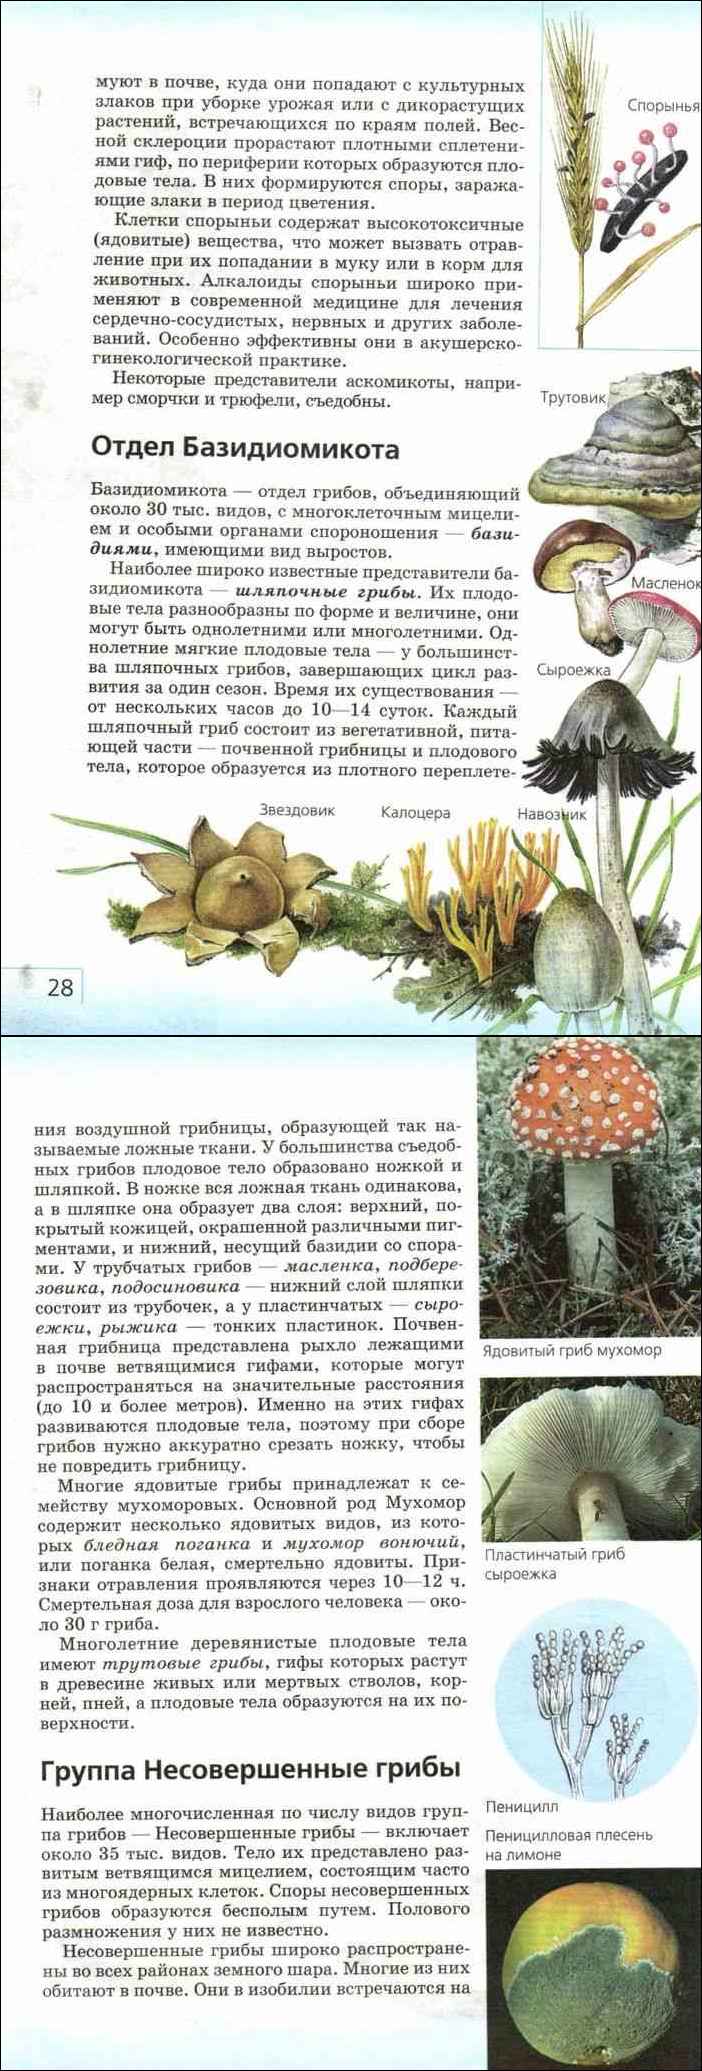 Как отличить съедобный гриб от несъедобного - сибирский медицинский портал